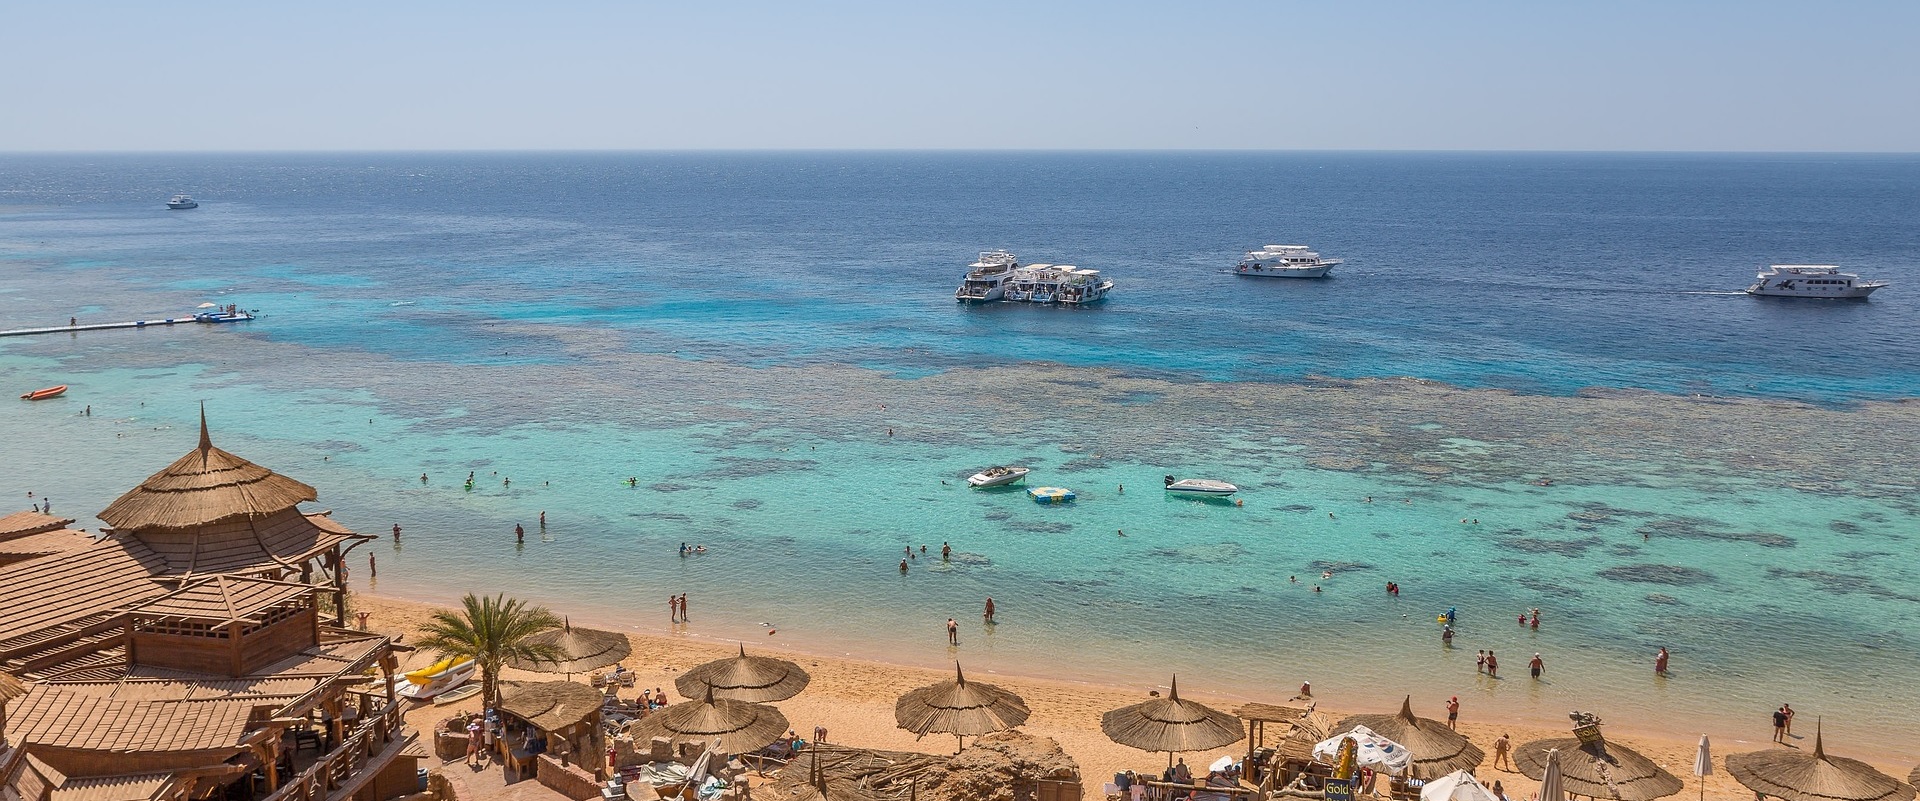 Kurort Sharm el Sheikh